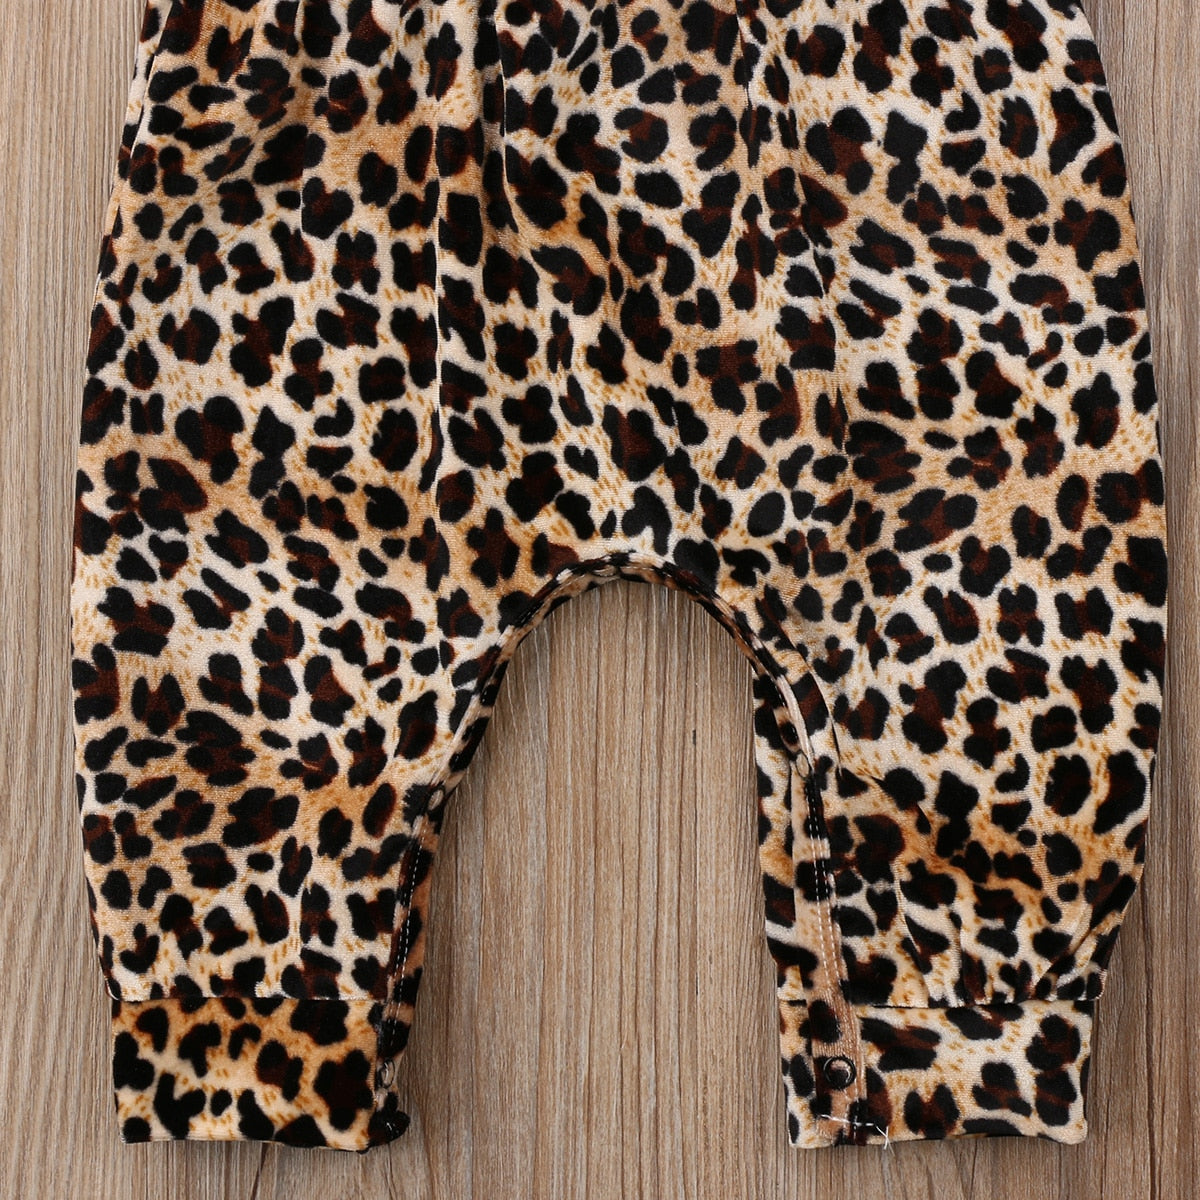 Cute Newborn Baby Girls Leopard Vest Romper Jumpsuit Harem Pants Outfits Clothes - ebowsos